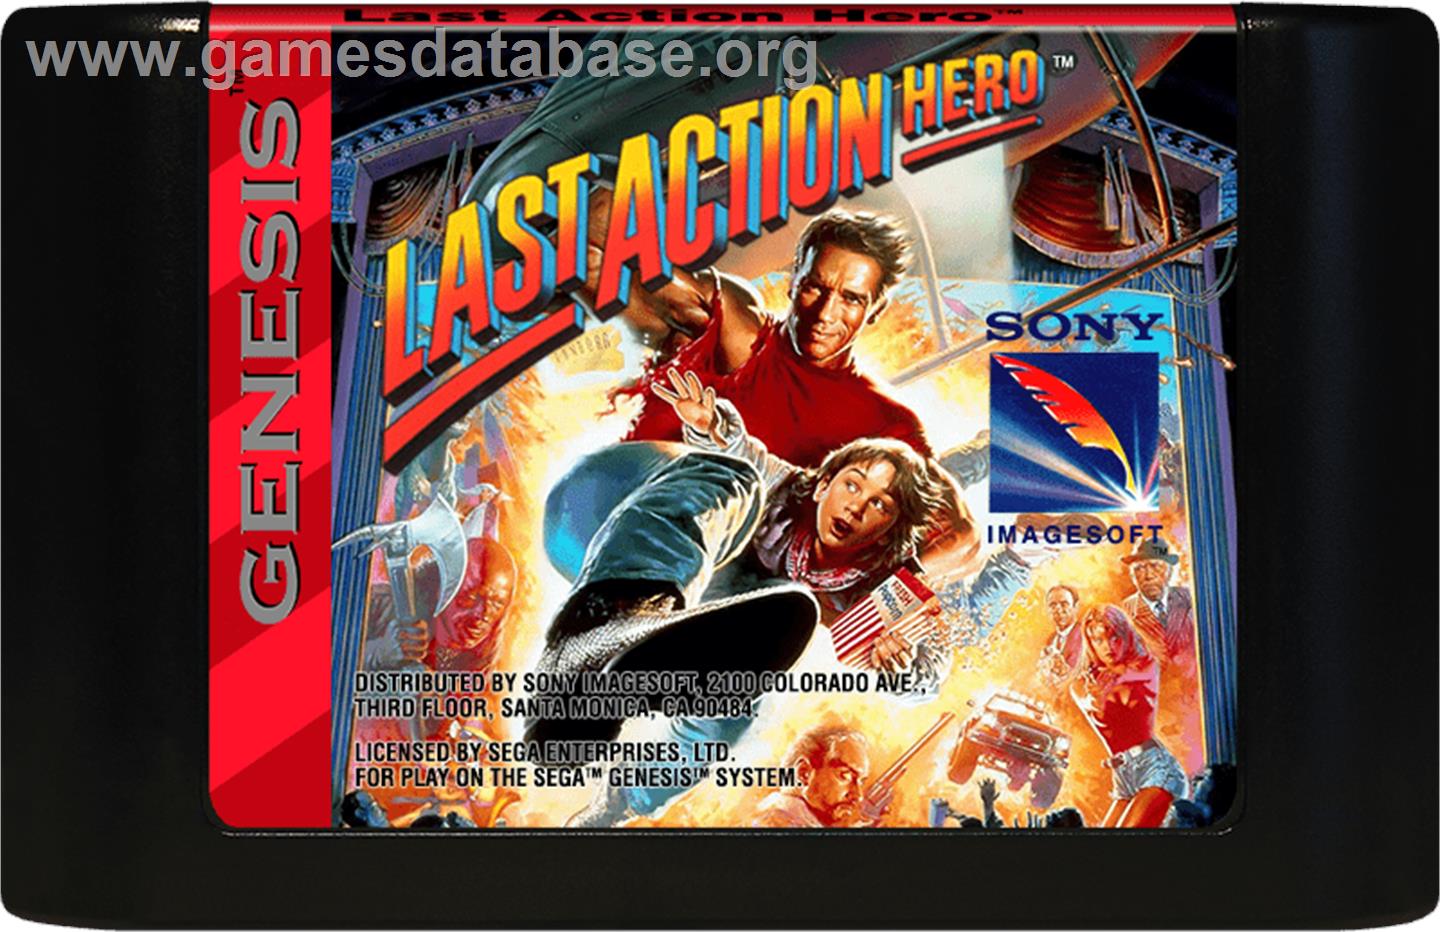 Last Action Hero - Sega Genesis - Artwork - Cartridge